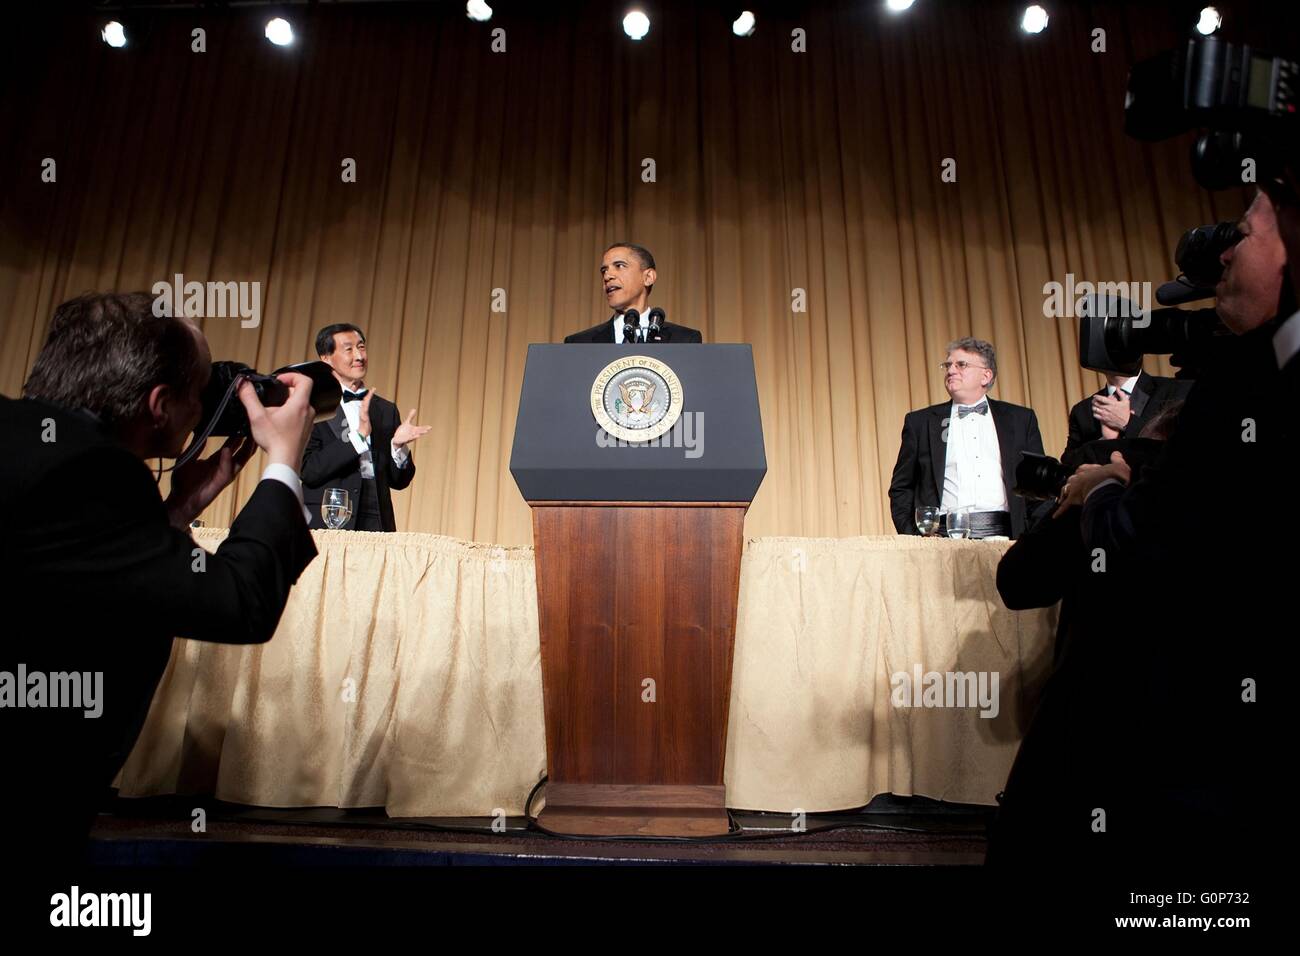 Président américain Barack Obama prononce une allocution au cours de la White House Correspondents Association Dîner 1er mai 2010 à Washington, D.C. Banque D'Images